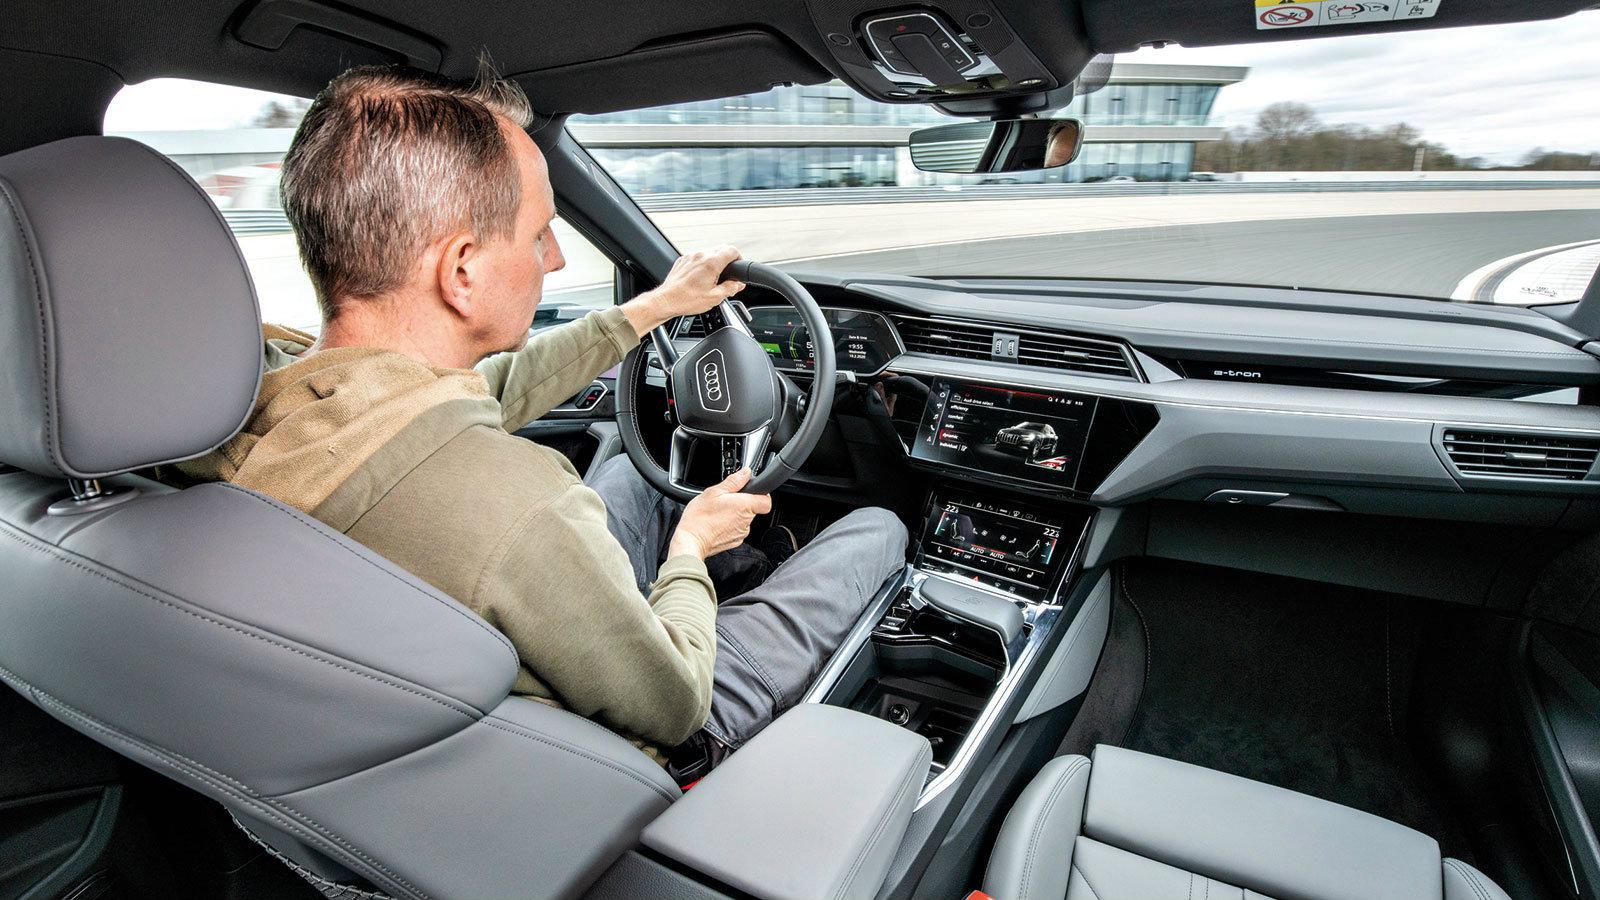 ΑΠΟΚΛΕΙΣΤΙΚΟ: Οδηγούμε το νέο Audi e-tron S Quattro